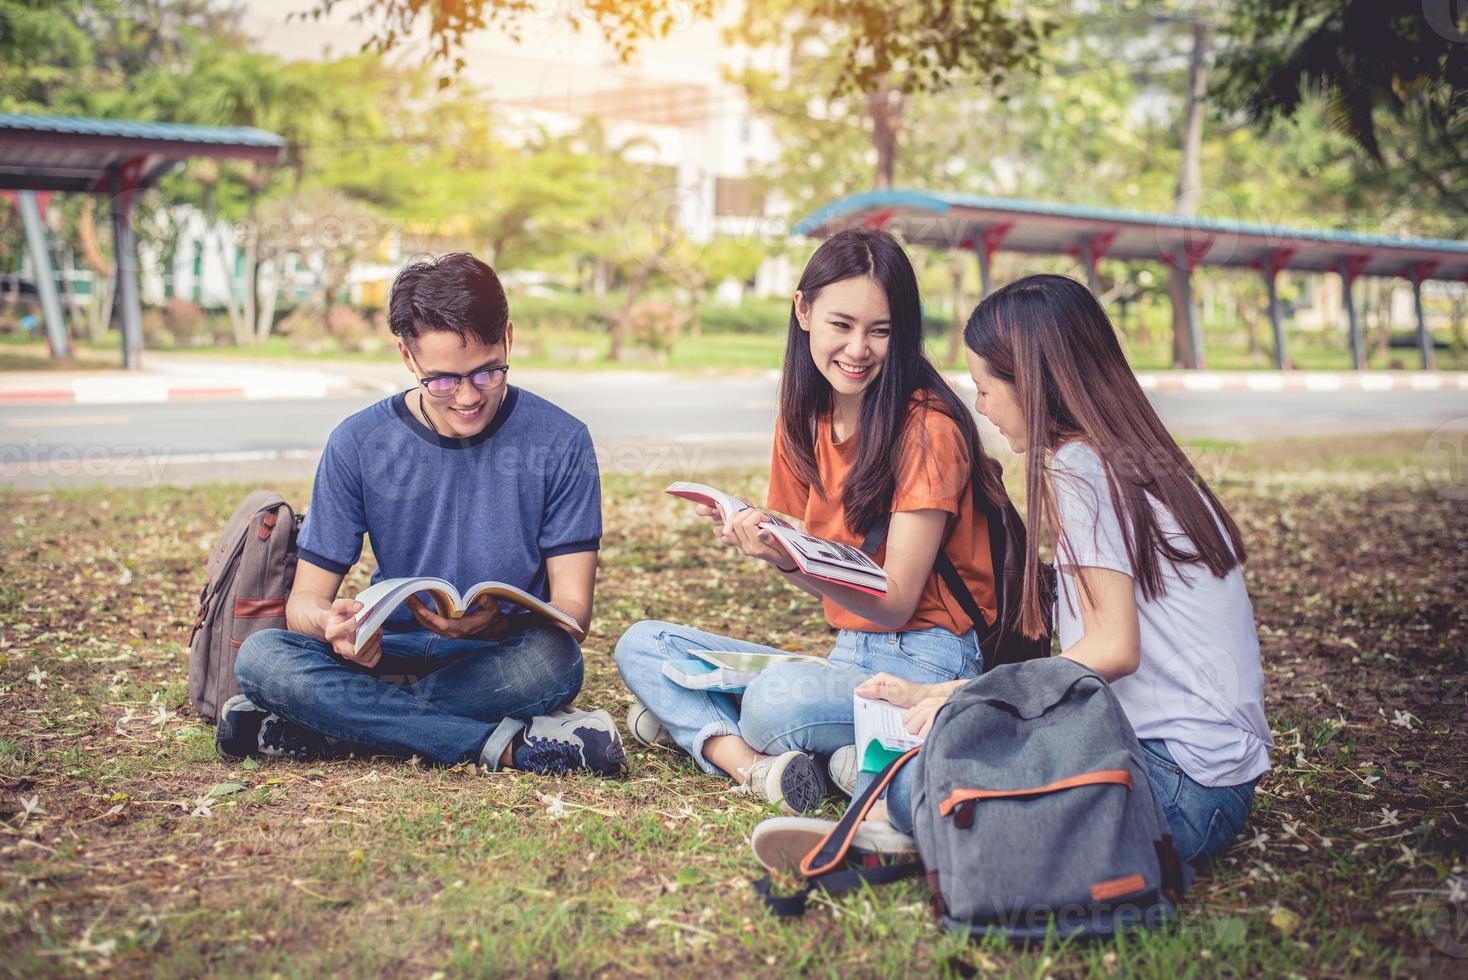 grupp asiatiska högskolestudenter som läser böcker och undervisar specialklass för tentamen på gräsplan utomhus. lycka och utbildning inlärningskoncept. tillbaka till skolan koncept. tonåring och människor tema foto